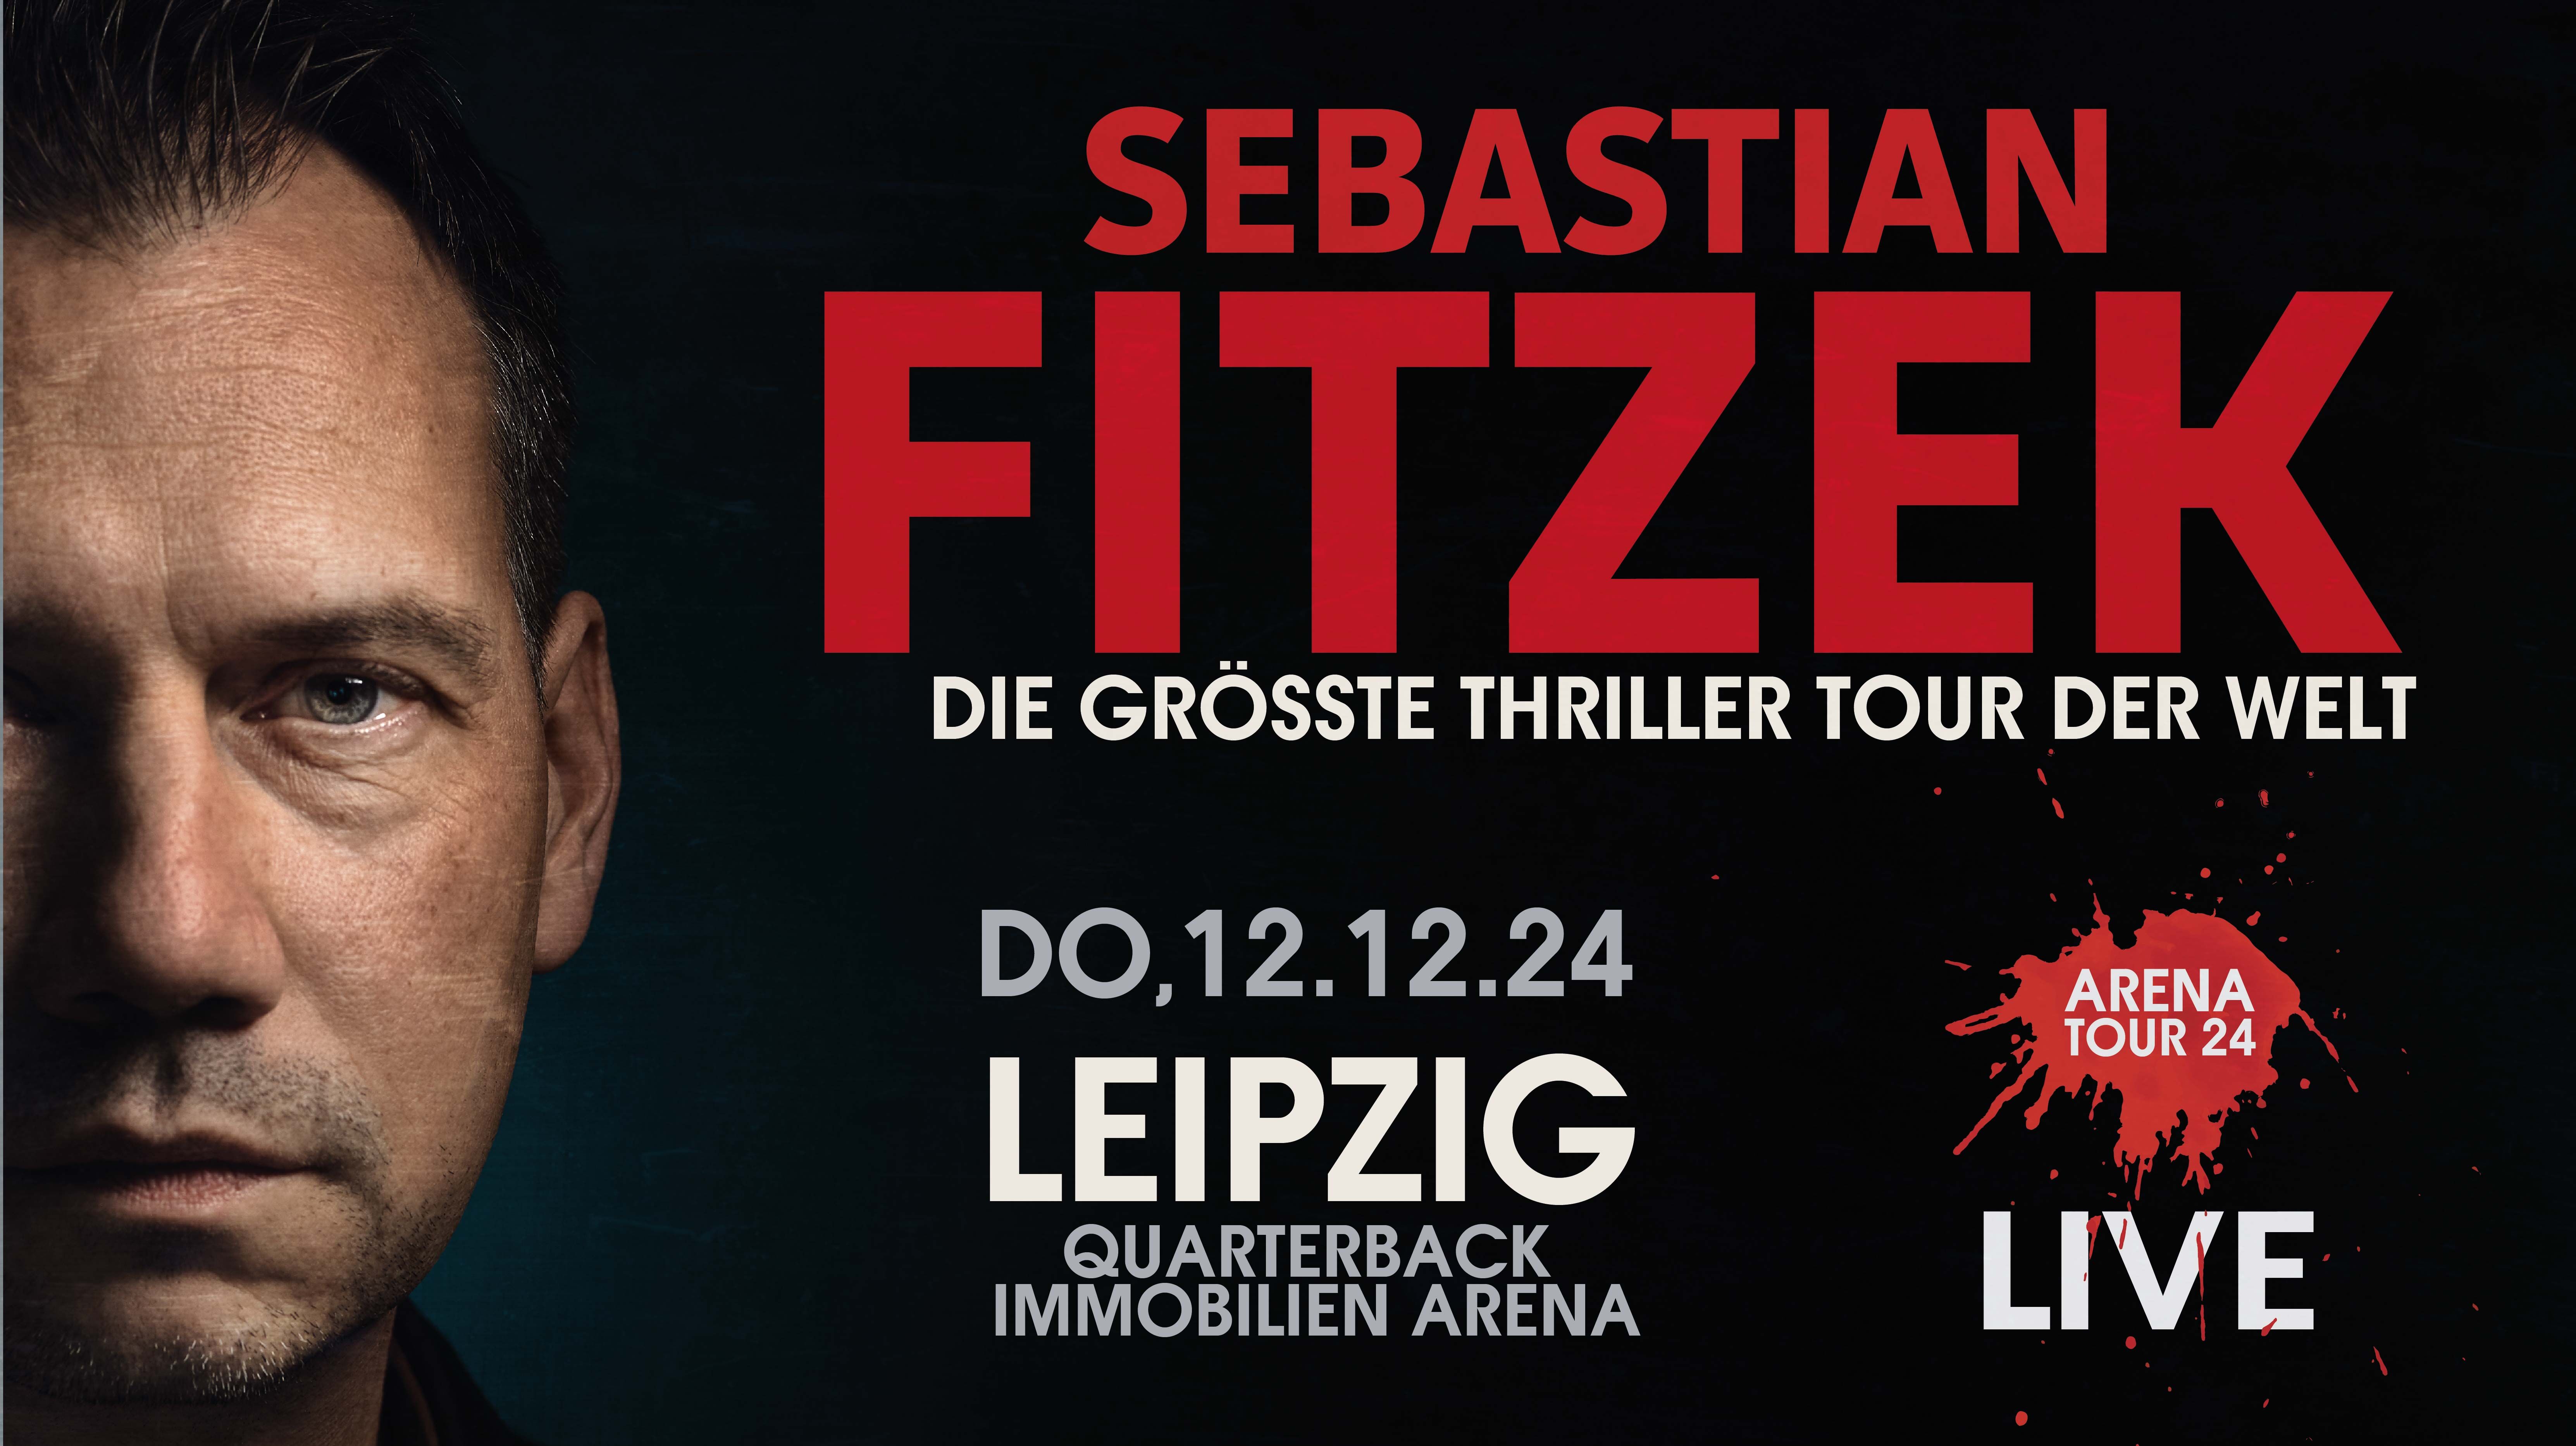 Es ist ein Teil des Gesichts von Sebastian Fitzek zu sehen und es wird seine Live Tour 2024 angekündigt.